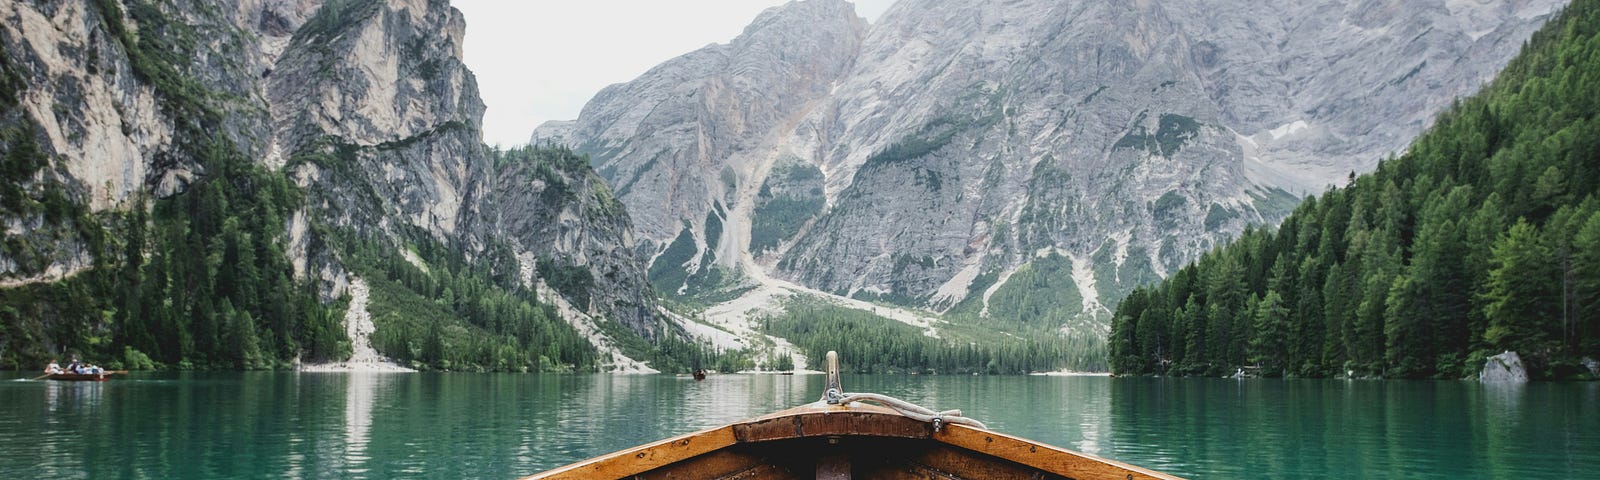 Old wooden boat floating in Alaska